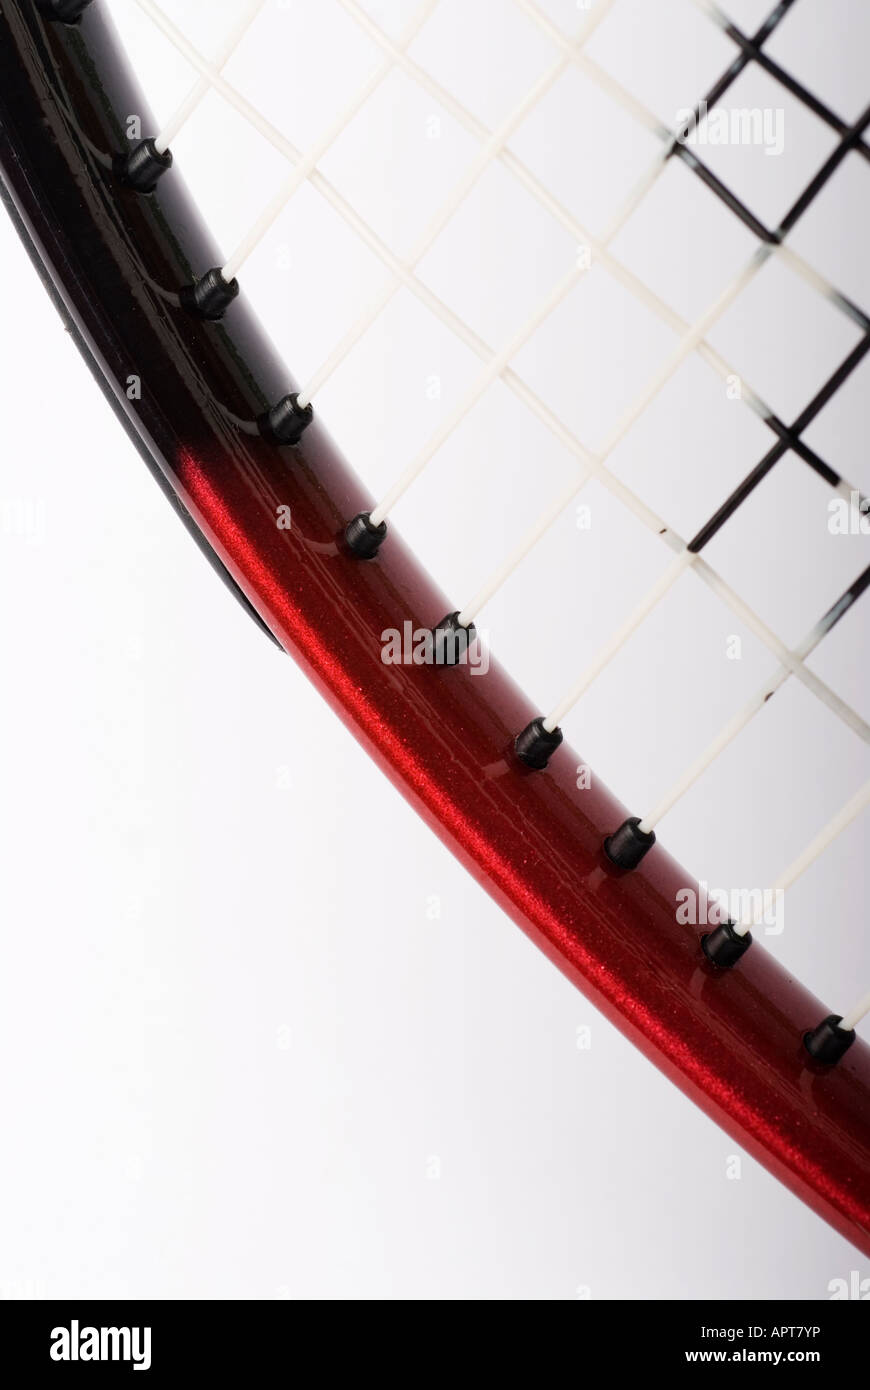 Schuss des Rahmens ein Tennis-Raquet und Zeichenfolgen, die das Bild vor einem weißen Hintergrund geschossen wird hautnah Stockfoto